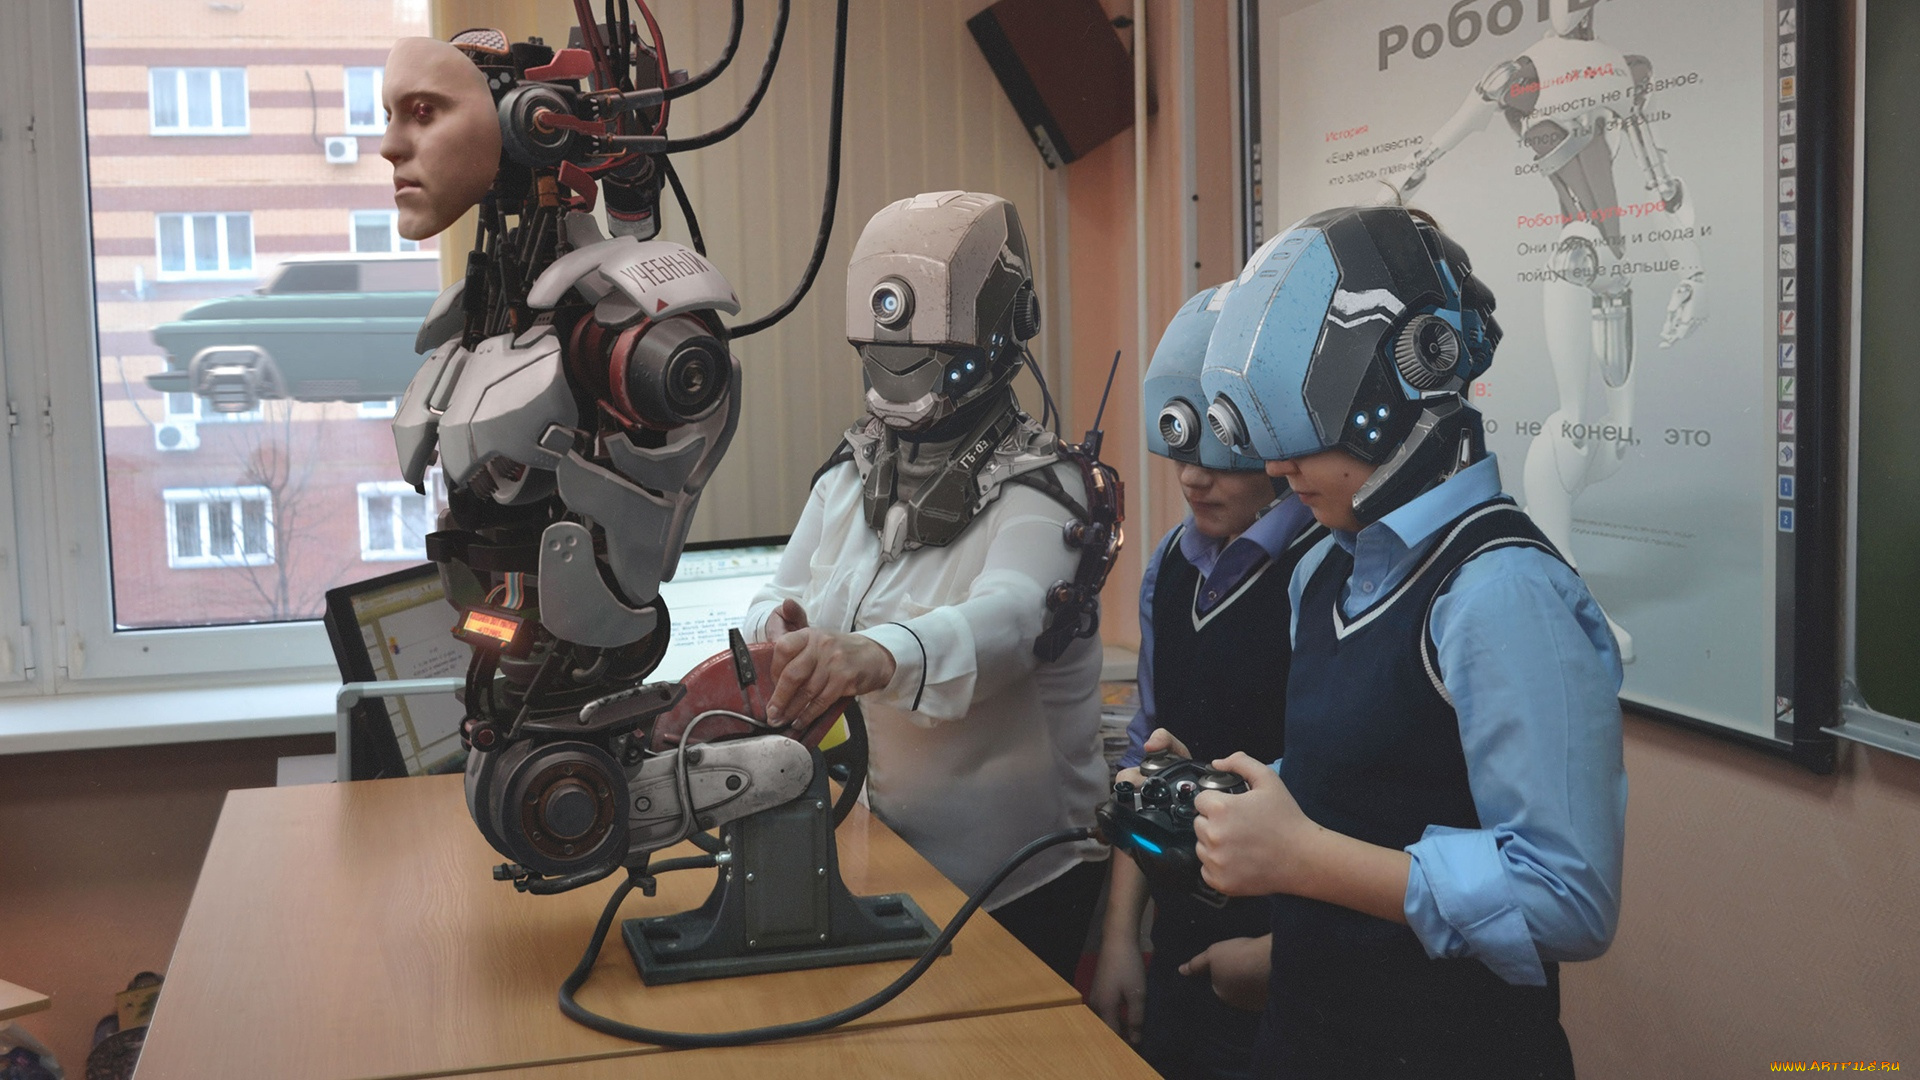 фэнтези, роботы, , киборги, , механизмы, робот, будущее, летающая, машина, окно, учитель, дети